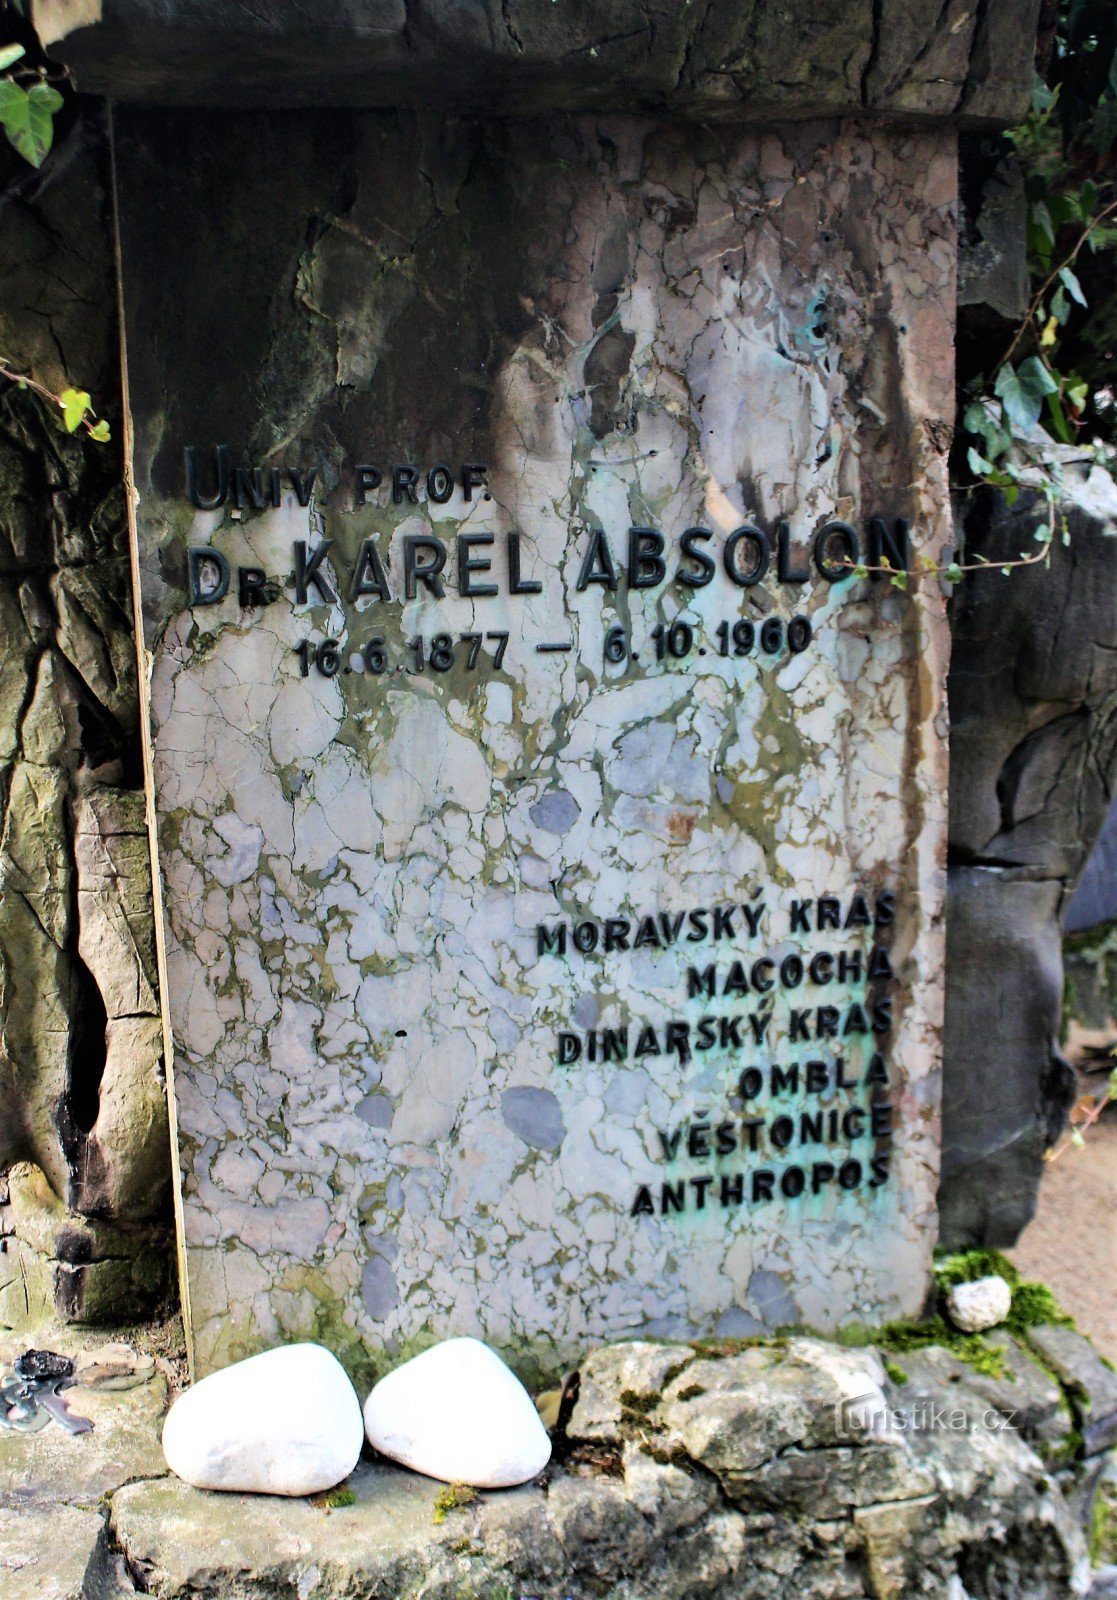 Brno-Ústřední hřbitov - mộ của Karel Absolon